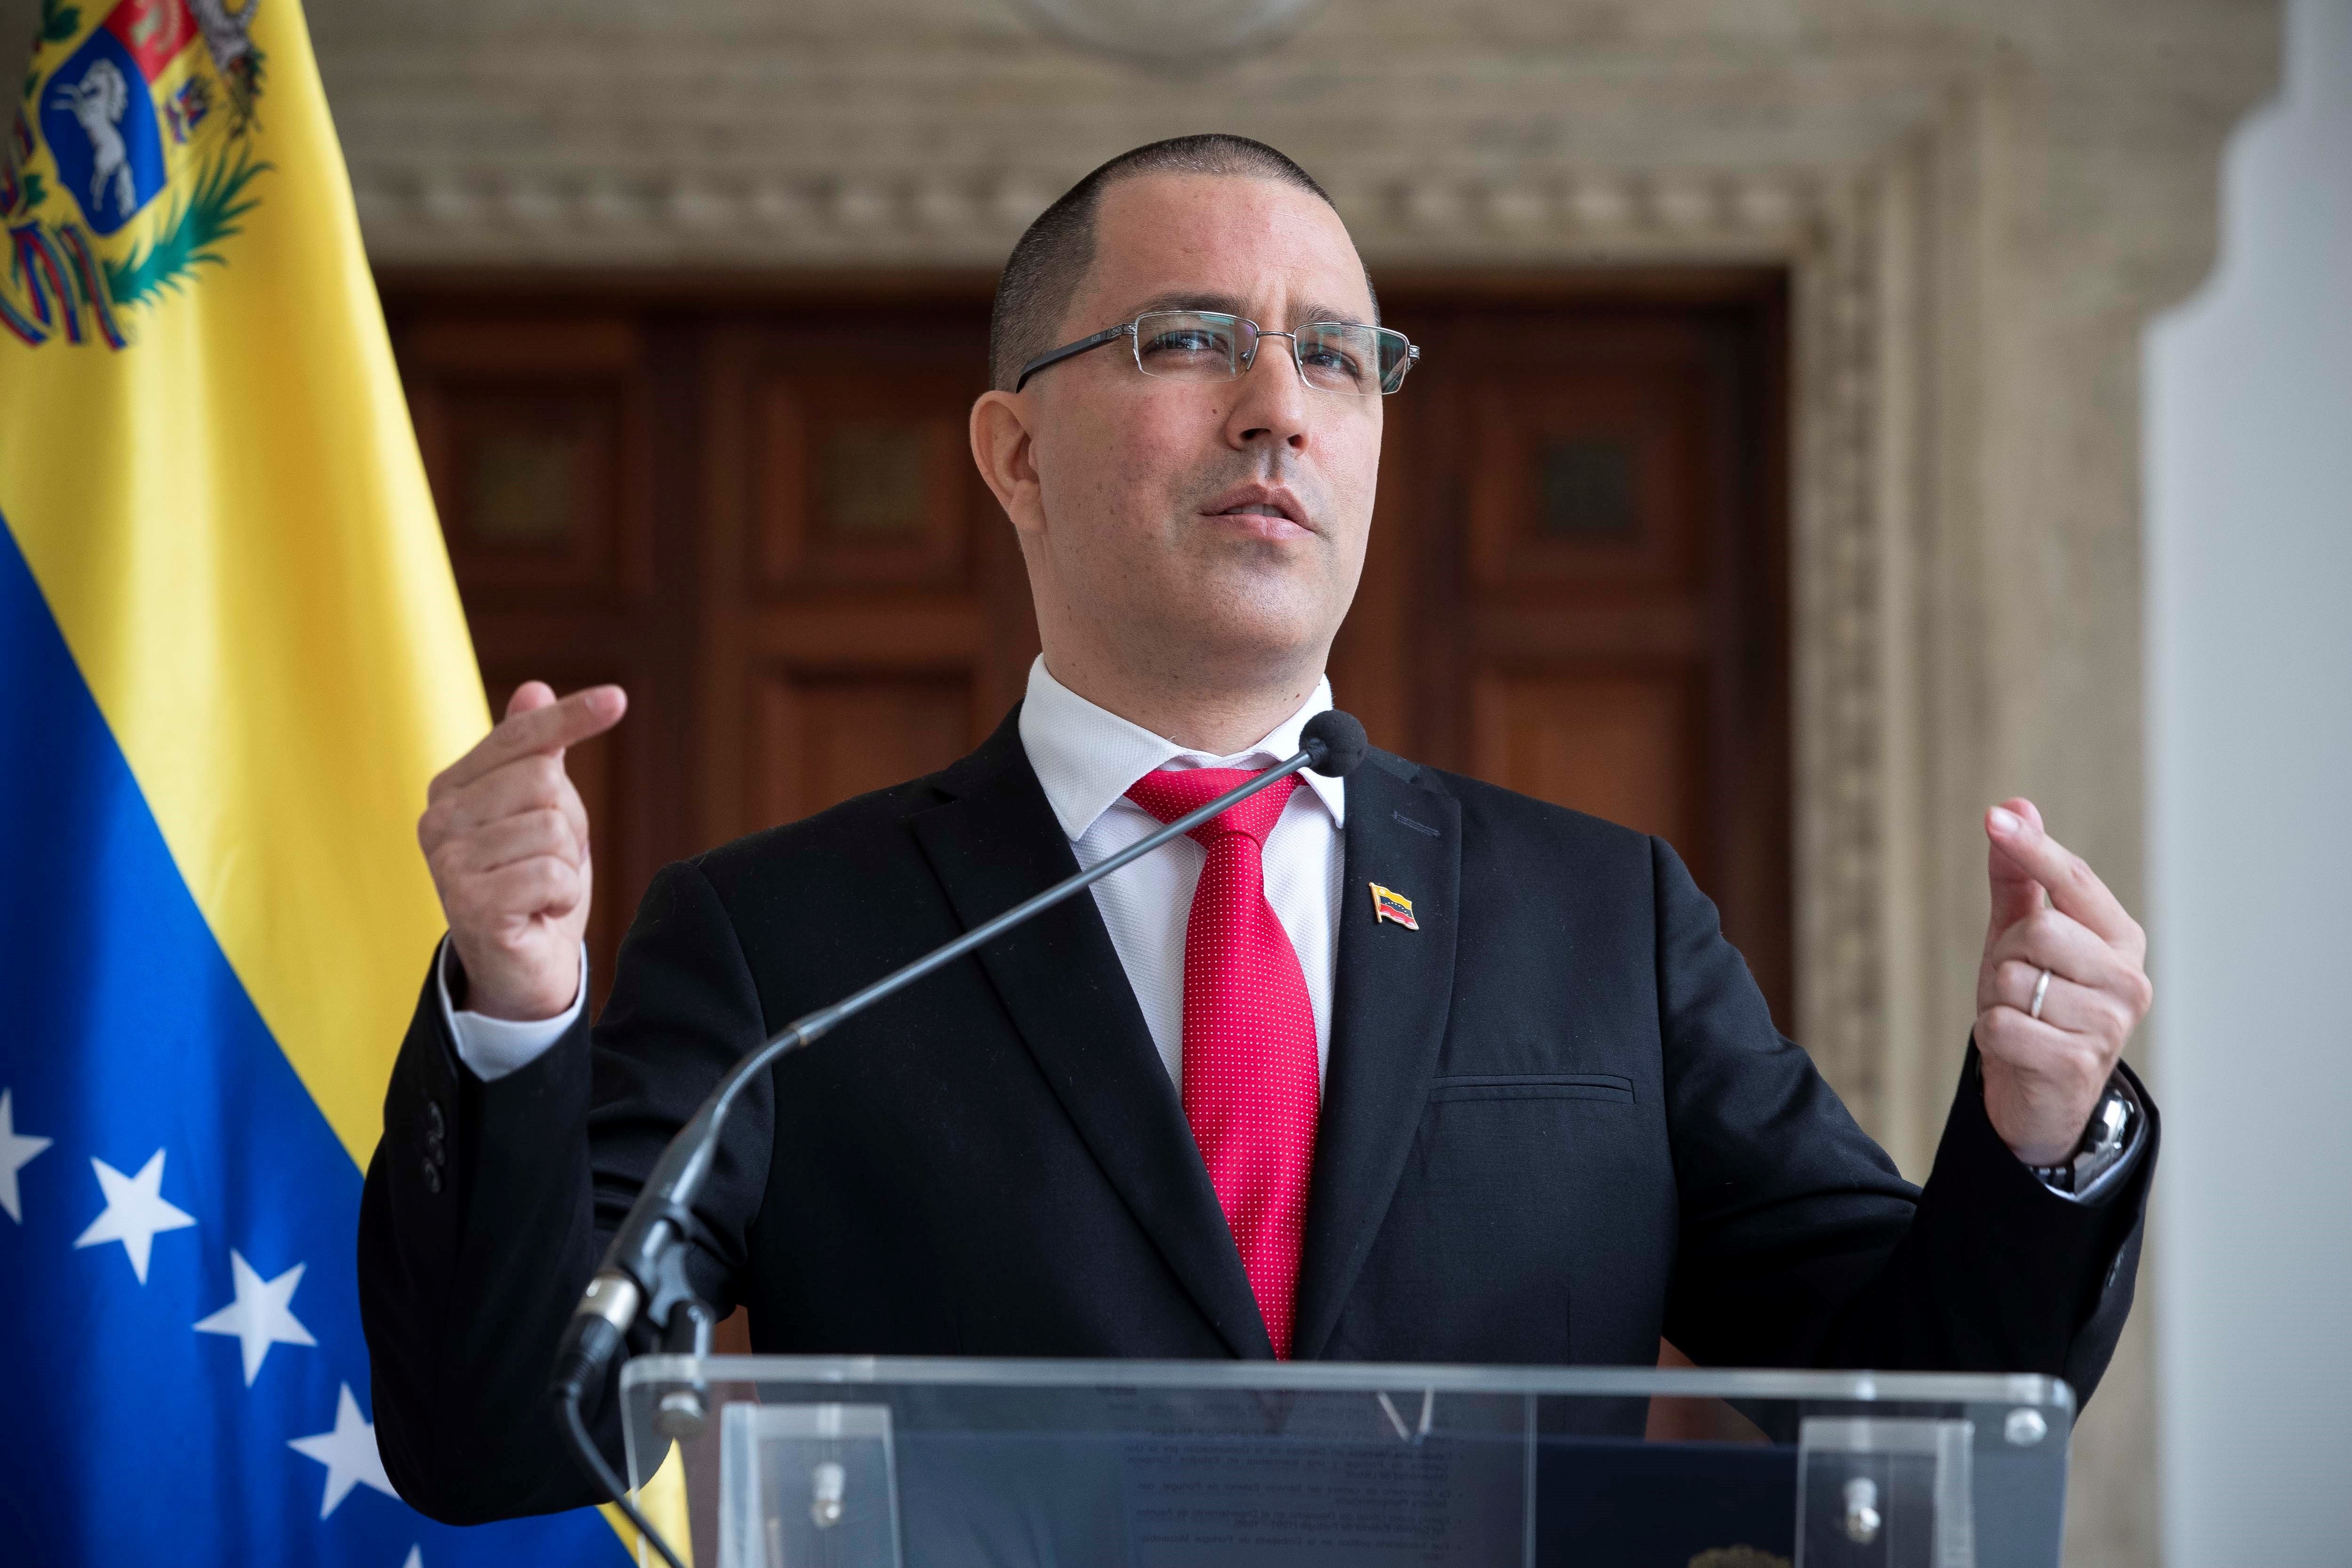 El régimen de Nicolás Maduro prometió “trabajar con respeto” al nuevo coordinador de la ONU para Venezuela